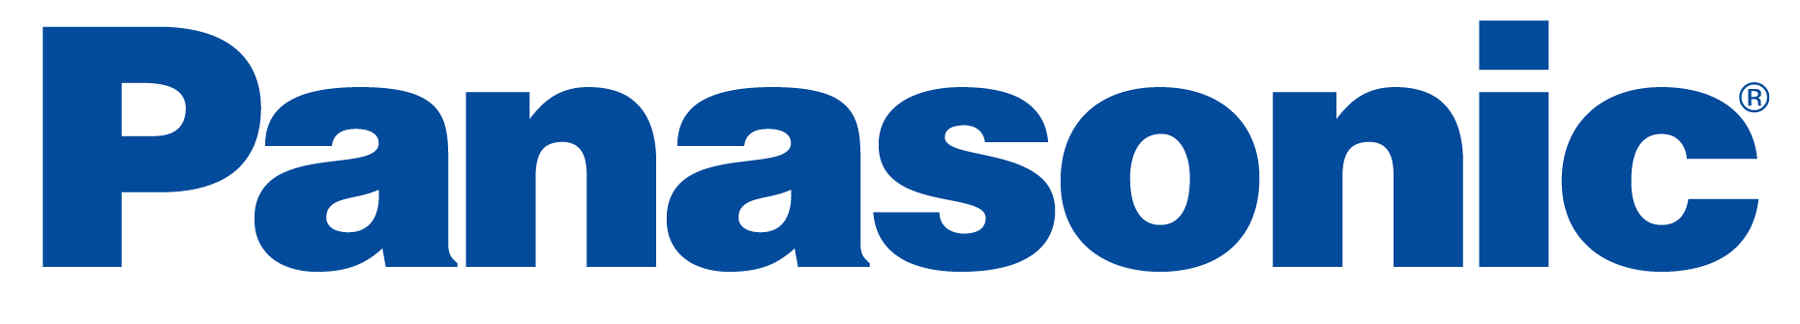 Camera Company Logo - Week 6: Brand Logo